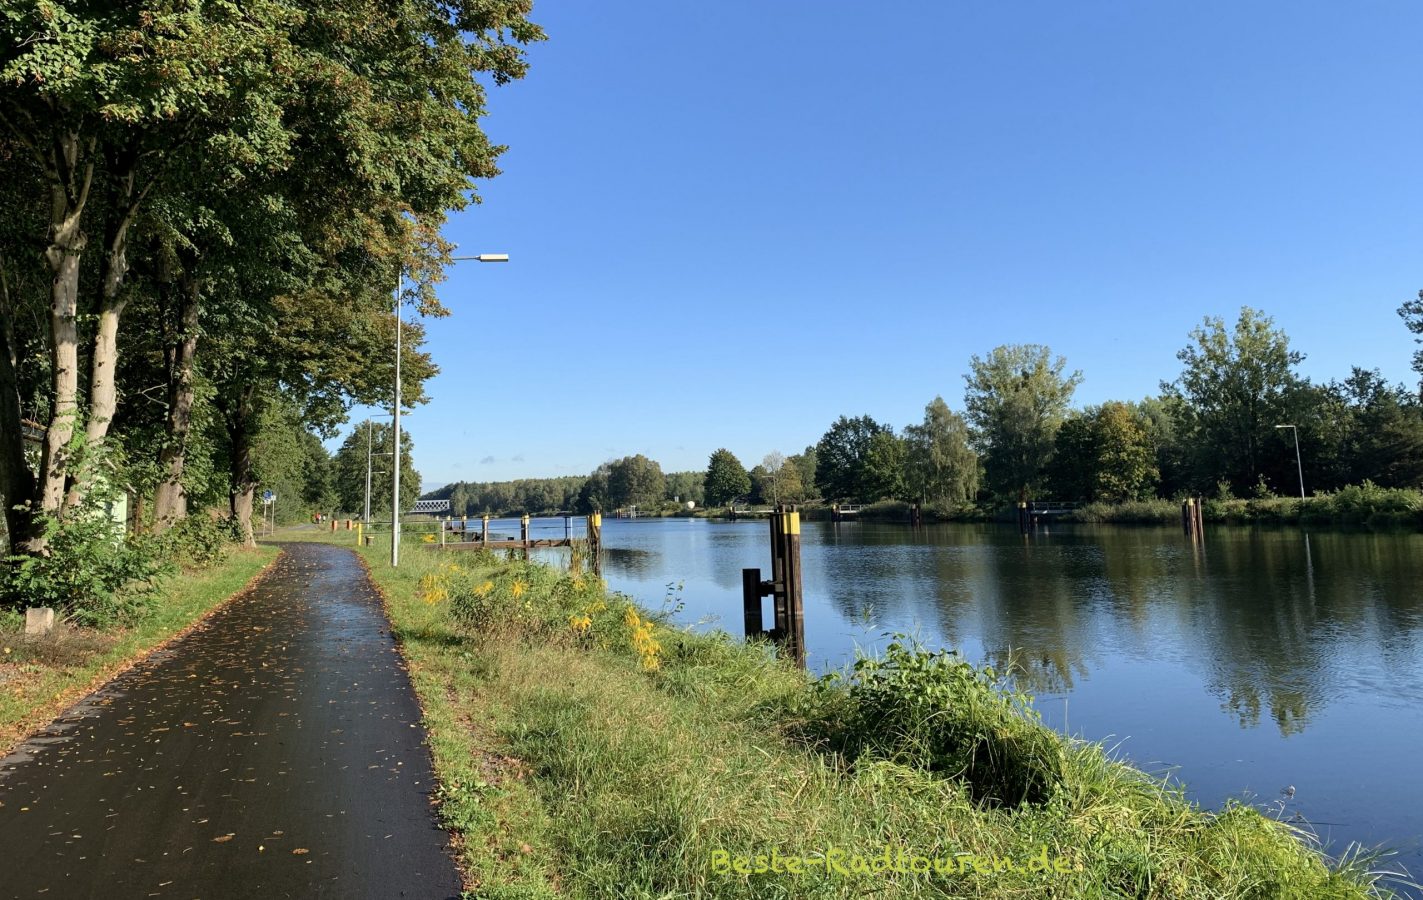 Radtour 6a: Von Oranienburg nach Bernau via Oder-Havel- und Finowkanal